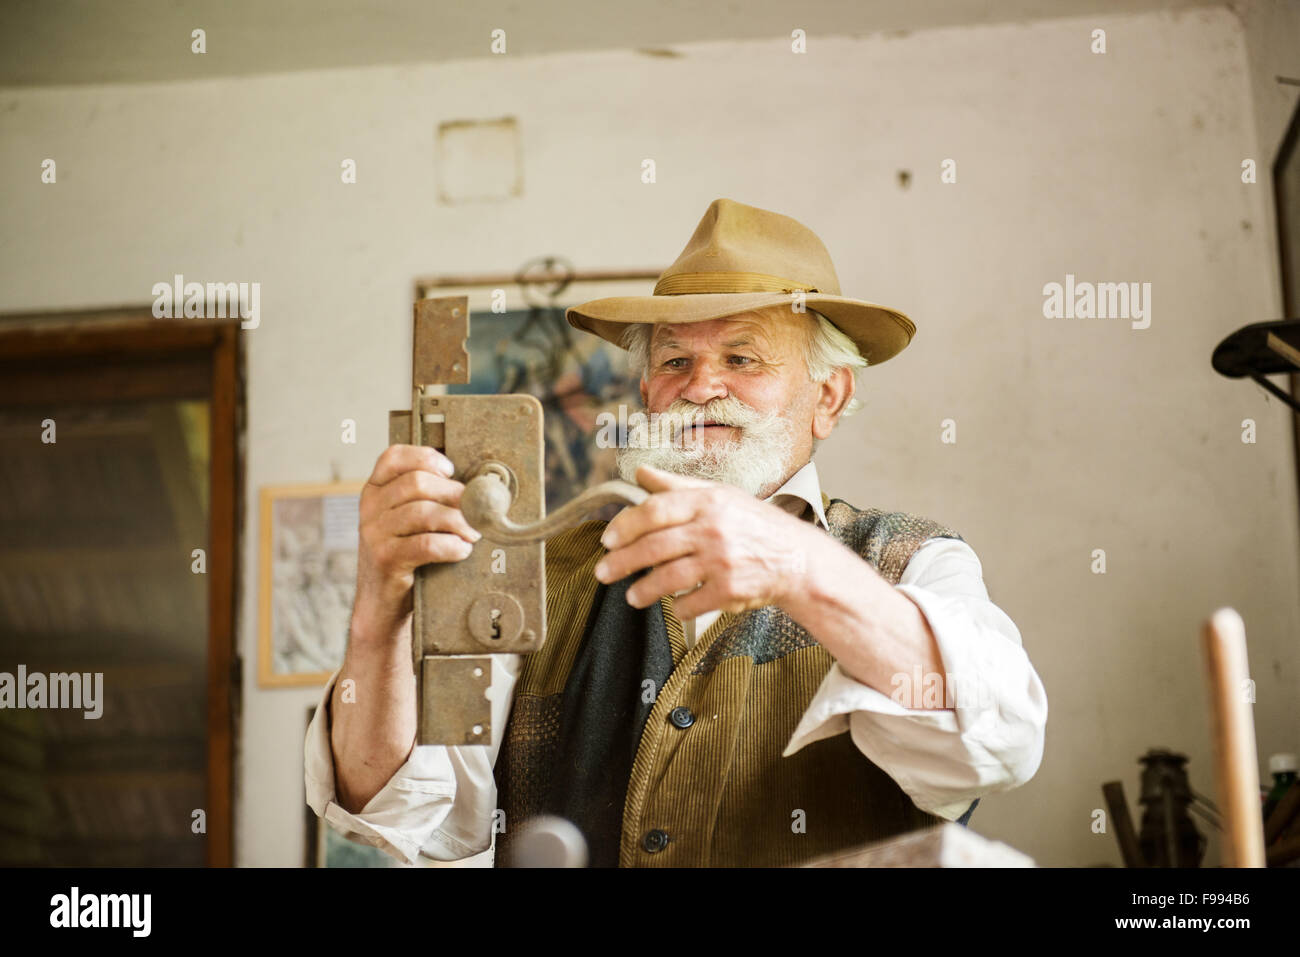 Vieux fermier avec barbe et chapeau dans son atelier Banque D'Images